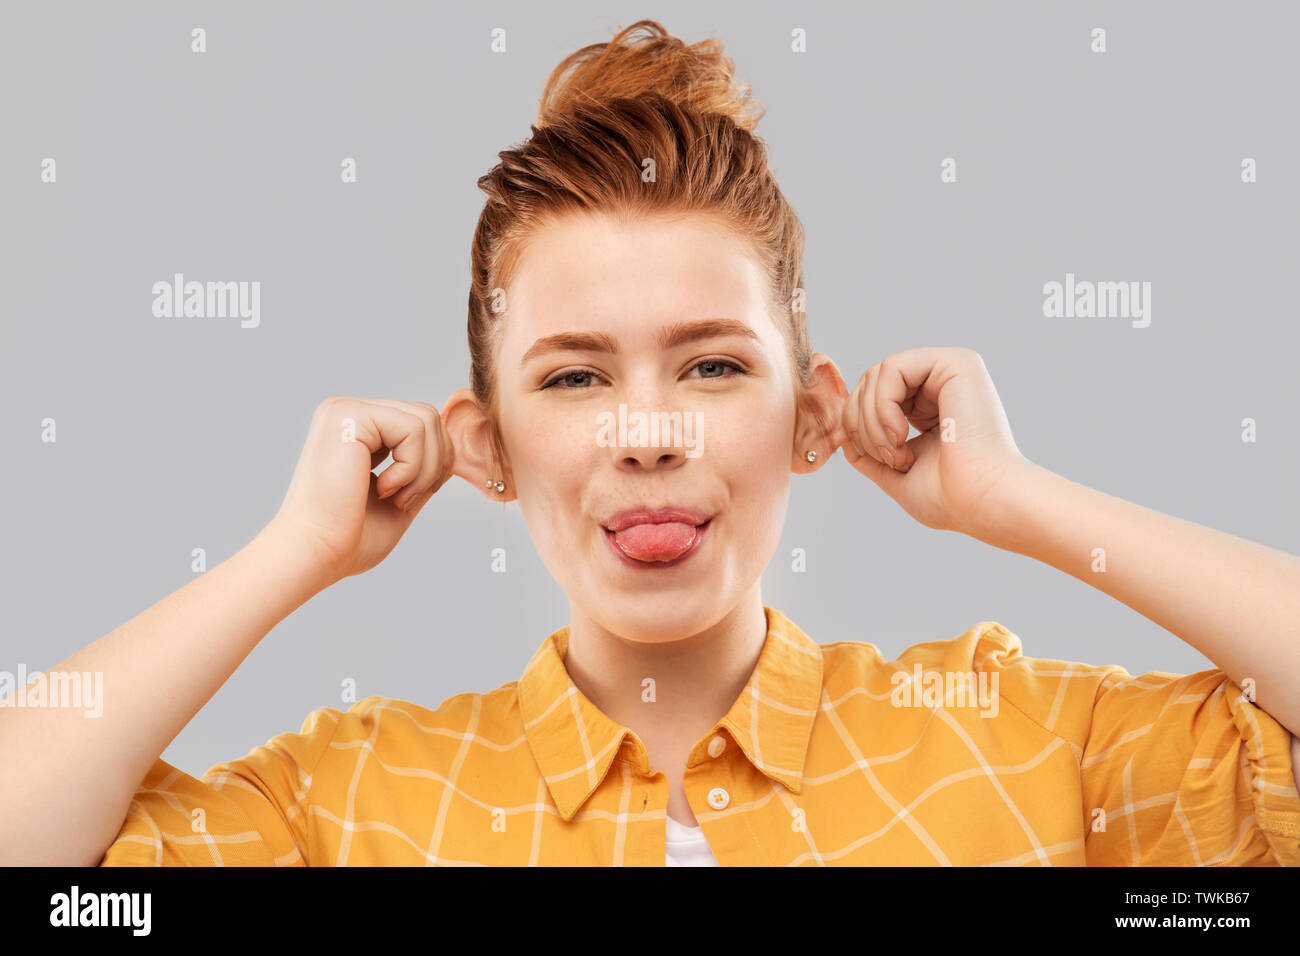 Lächelnd rothaarige Teenager Mädchen ihre Zunge zeigen Stockfoto